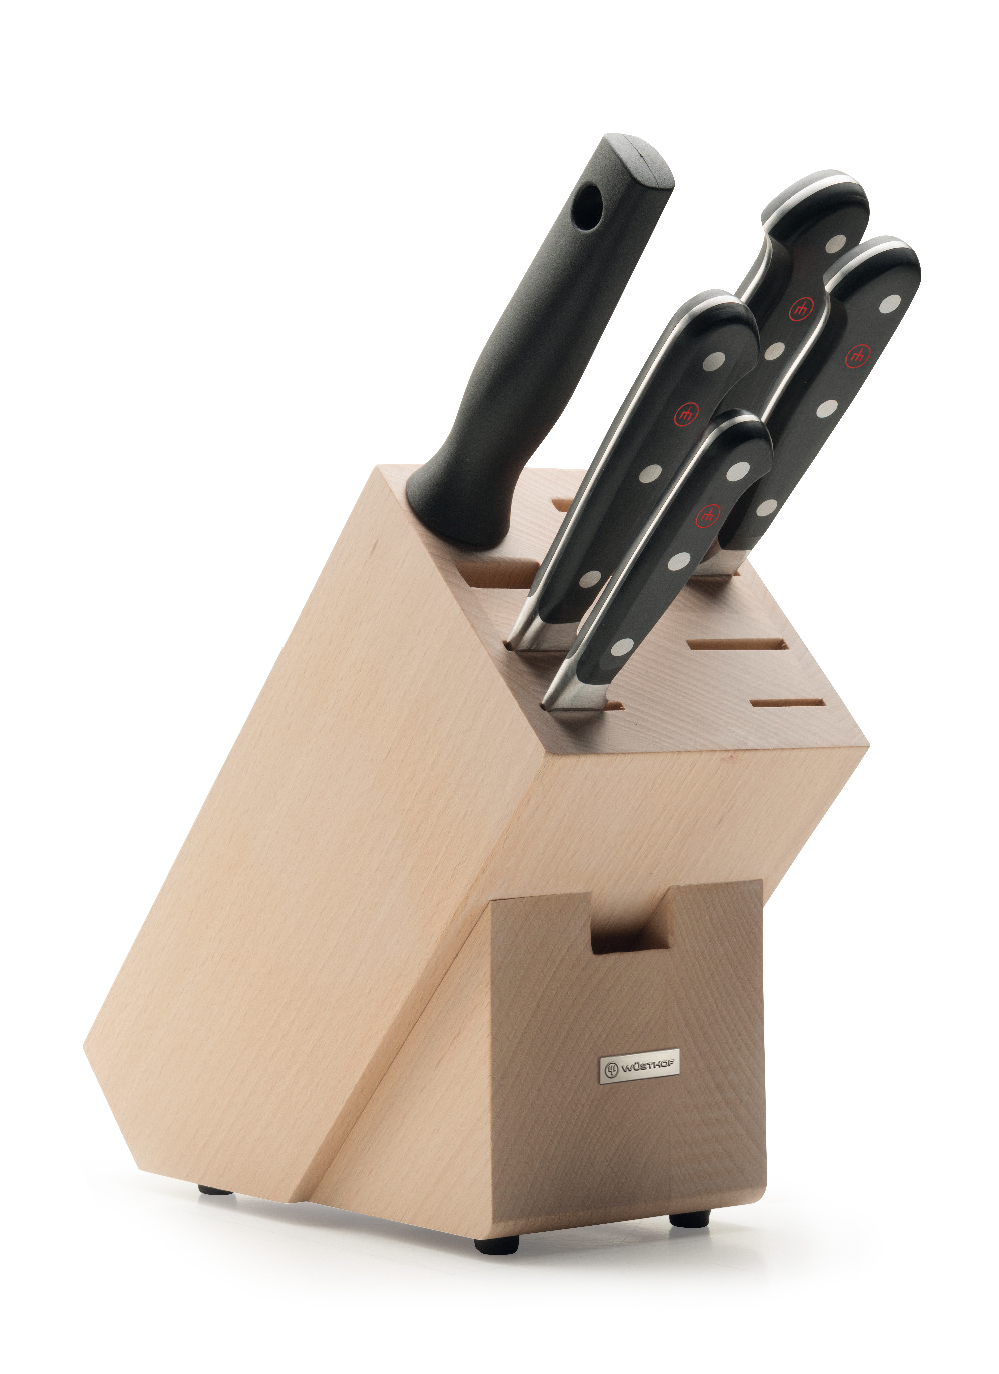 Messerblock mit 5 Artikeln / Knife block with 5 pieces